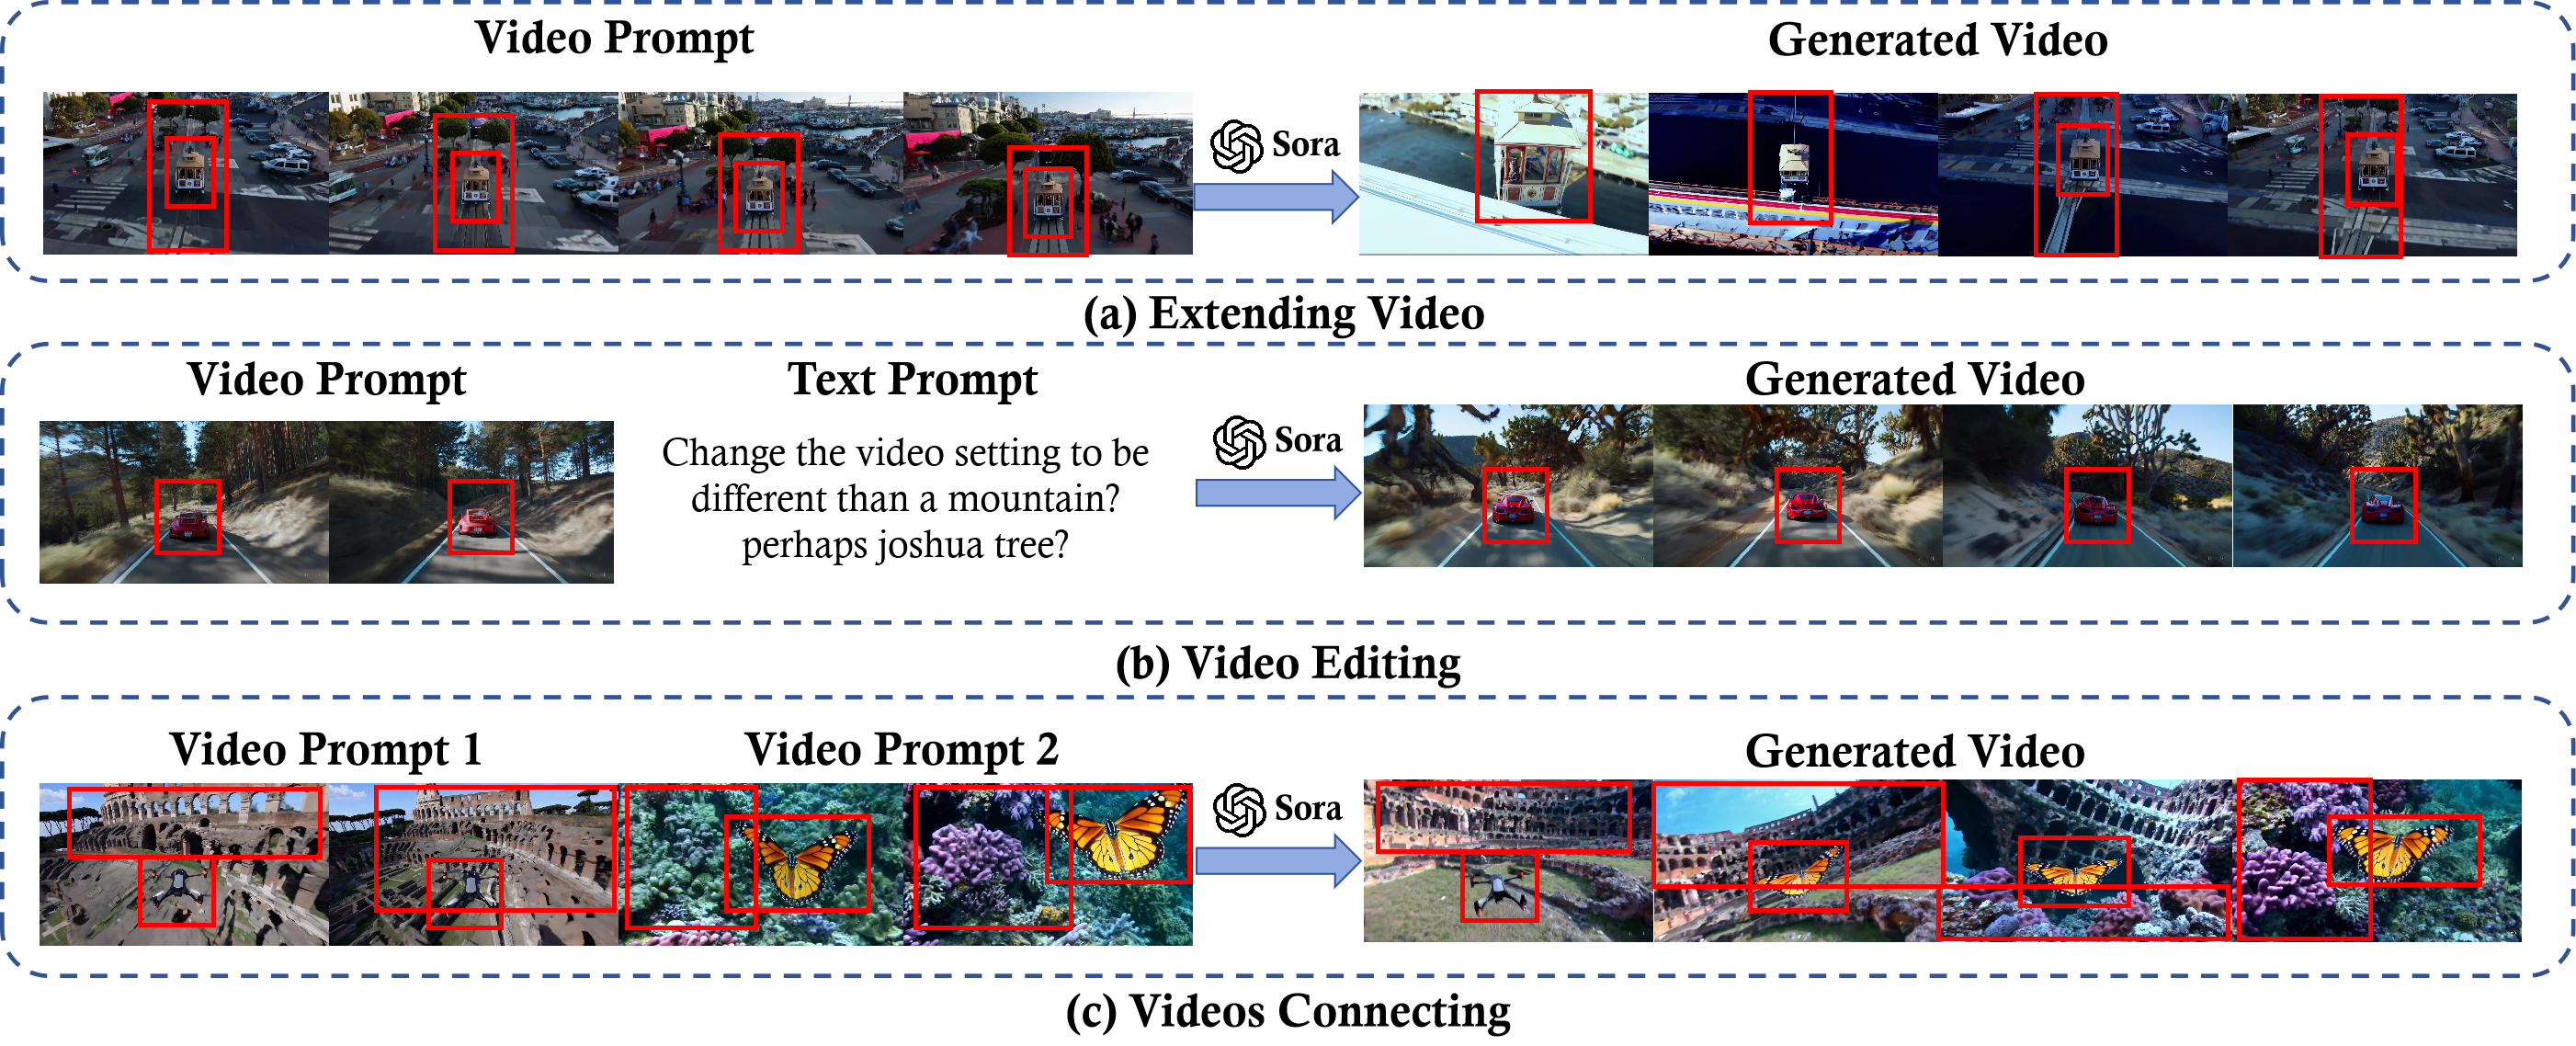 图 17: 这些示例展示了对 Sora 模型使用视频提示技巧的几种方式：(a) 视频扩展，模型将视频序列向原始片段的相反方向推进，(b) 视频编辑，根据文本提示对视频中的特定元素，比如场景进行改变，以及 (c) 视频连接，通过两个不同的视频提示将视频片段无缝结合，创造出一个连贯的故事。每个步骤都受到一个视觉焦点的引导，用红色框标出，保证视频内容的连贯性和准确性。